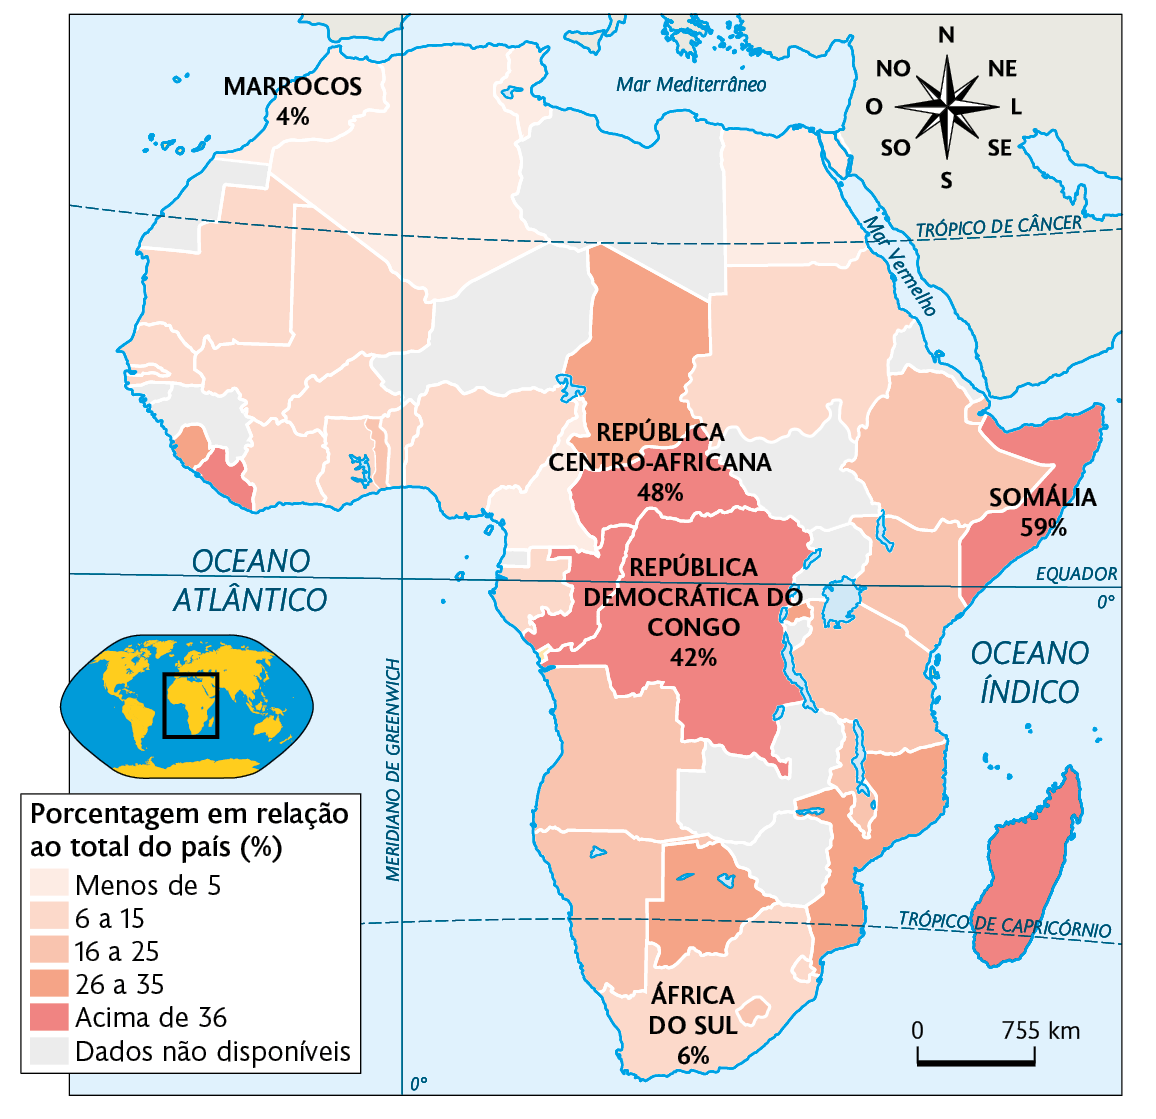 Mapa. Desnutrição na África (2020). Porcentagem em relação ao total do país. Menos de 5: presentes em menor quantidade, no norte (onde está Marrocos com 4 por cento), e oeste. 6 a 15: em maior quantidade, aparecendo no norte, nordeste e na África do Sul com 6 por cento. 16 a 25: presente no leste e sudoeste. 26 a 35: centro-norte, sul e sudeste. Acima de 36: área central, com República Centro-Africana com 48 por cento e República Democrática do Congo com 42 por cento, no leste com Somália com 59 por cento, e Libéria. Dados não disponíveis: países no centro-norte, noroeste e leste. À esquerda, mapa de localização, planisfério destacando a região descrita. No canto superior direito, a rosa dos ventos e na parte inferior, a escala: 755 quilômetros por centímetro.